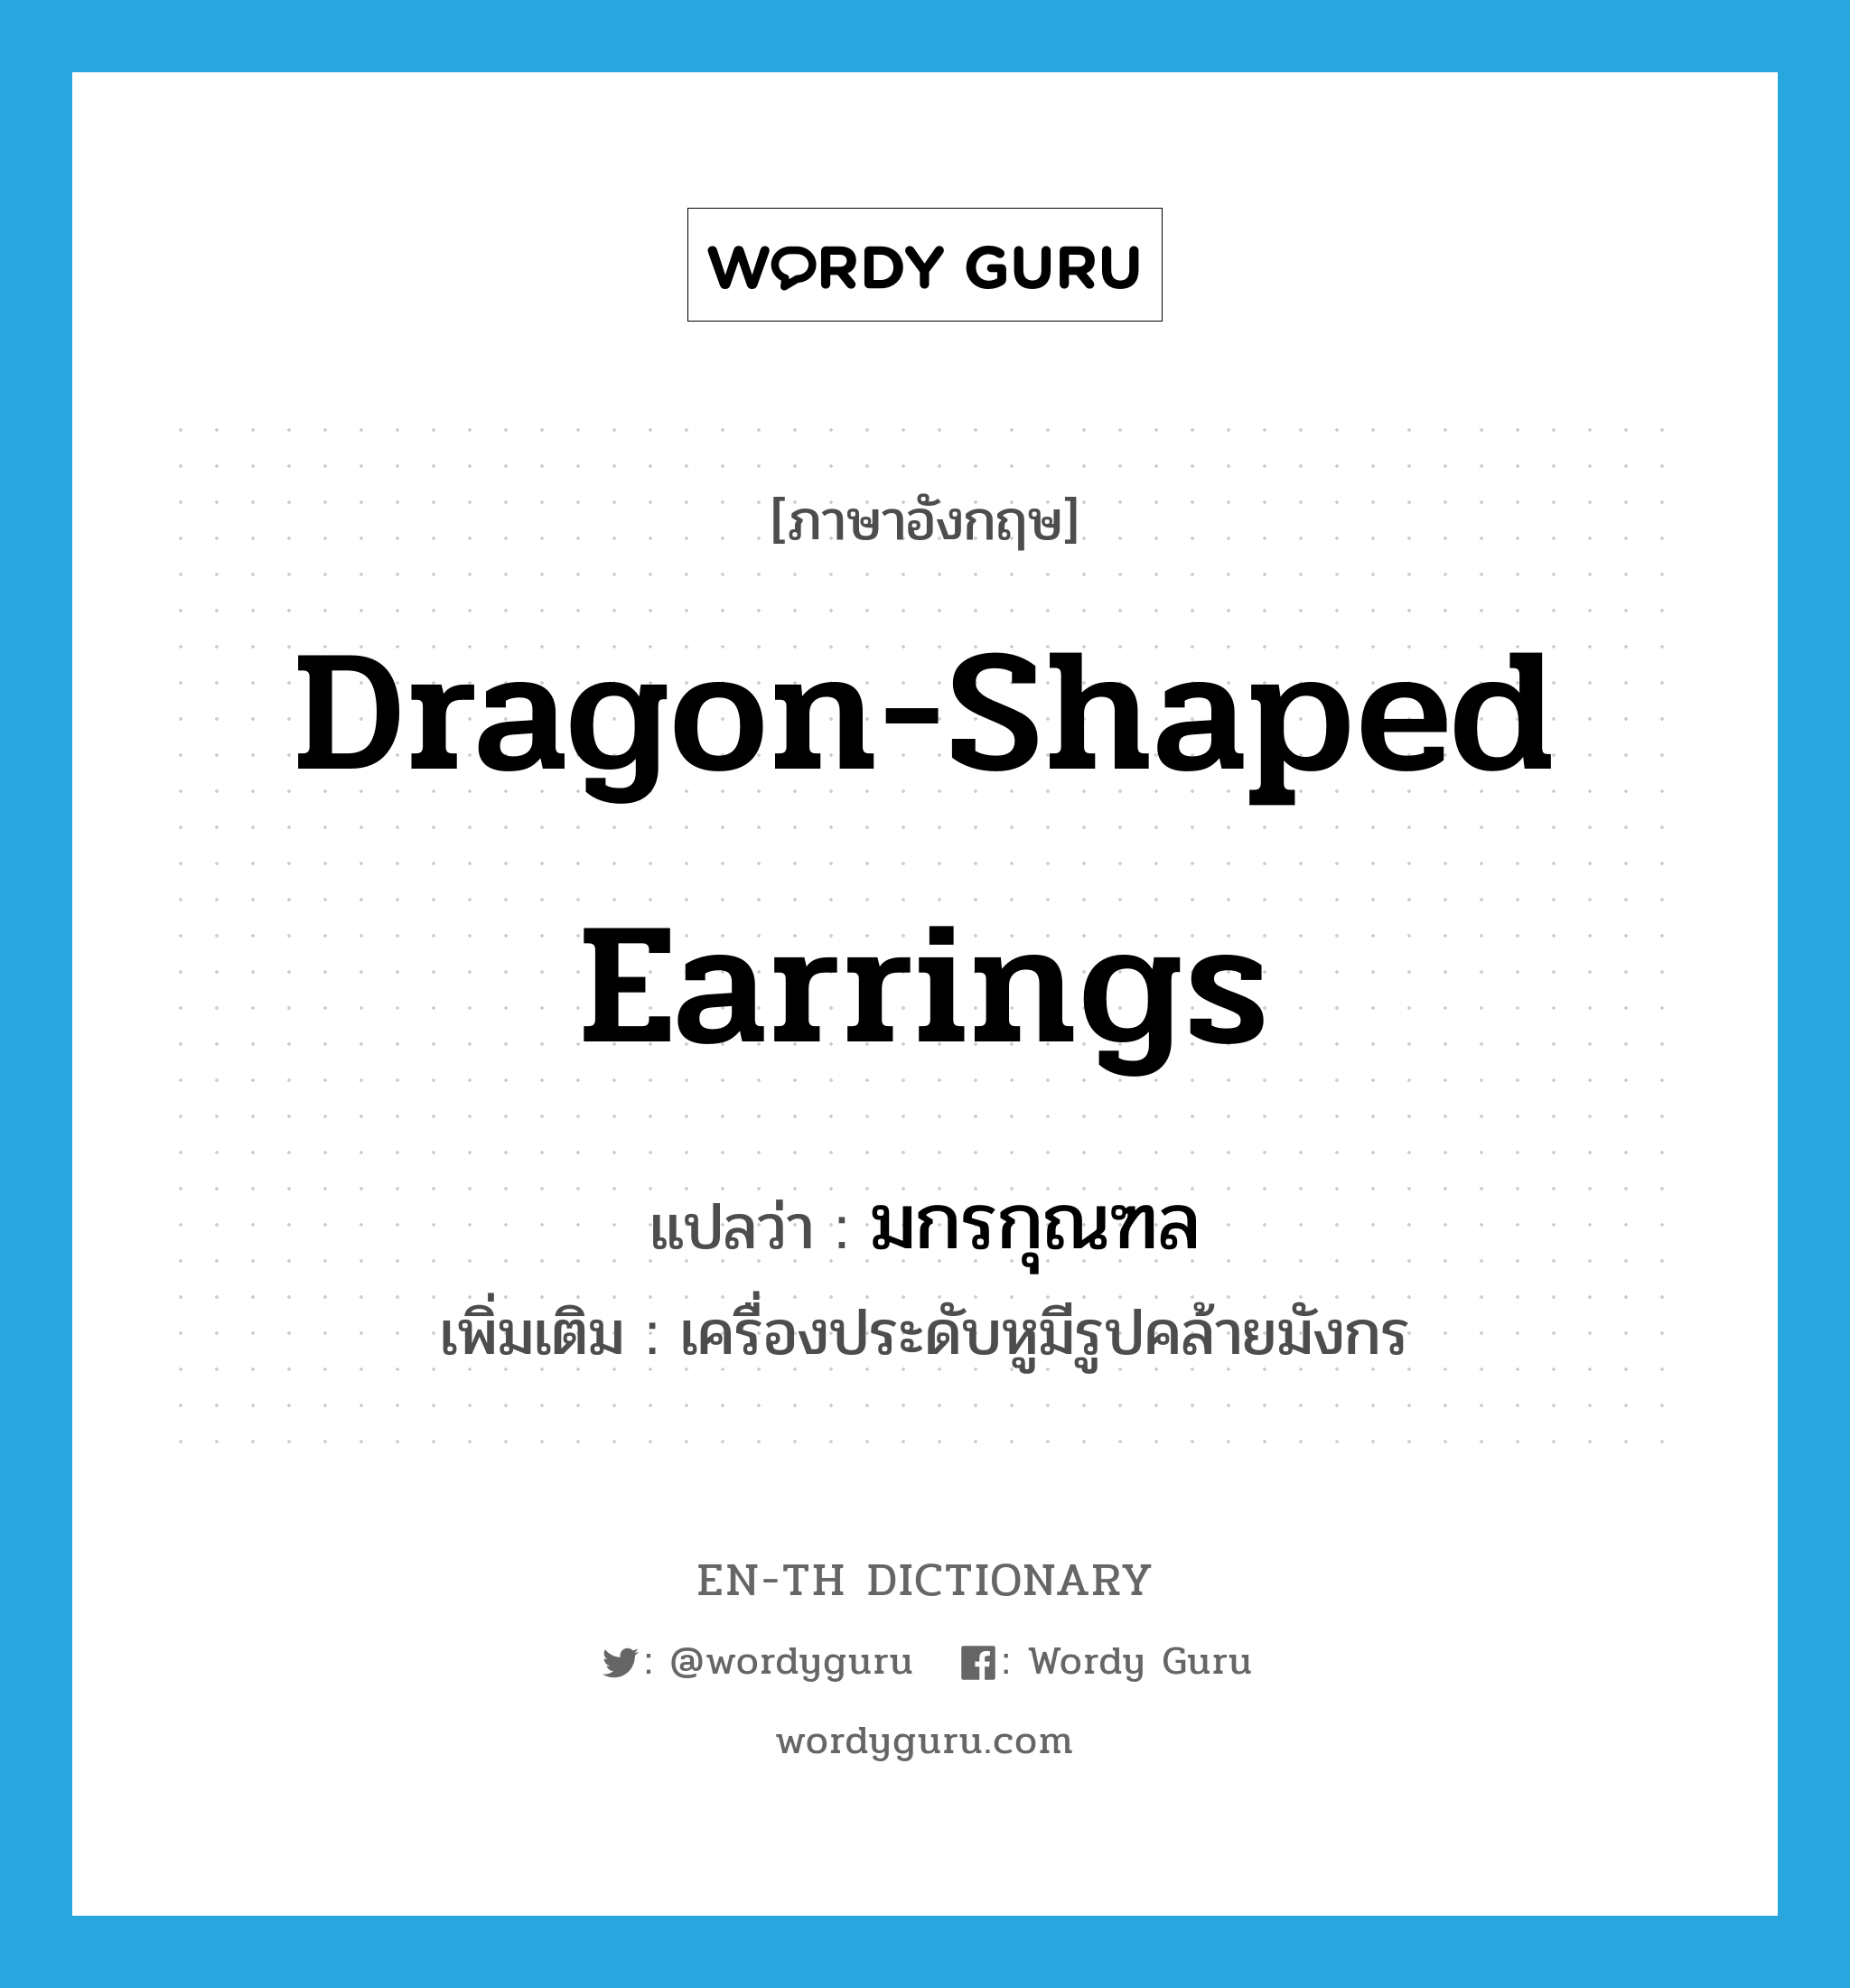 dragon-shaped earrings แปลว่า?, คำศัพท์ภาษาอังกฤษ dragon-shaped earrings แปลว่า มกรกุณฑล ประเภท N เพิ่มเติม เครื่องประดับหูมีรูปคล้ายมังกร หมวด N